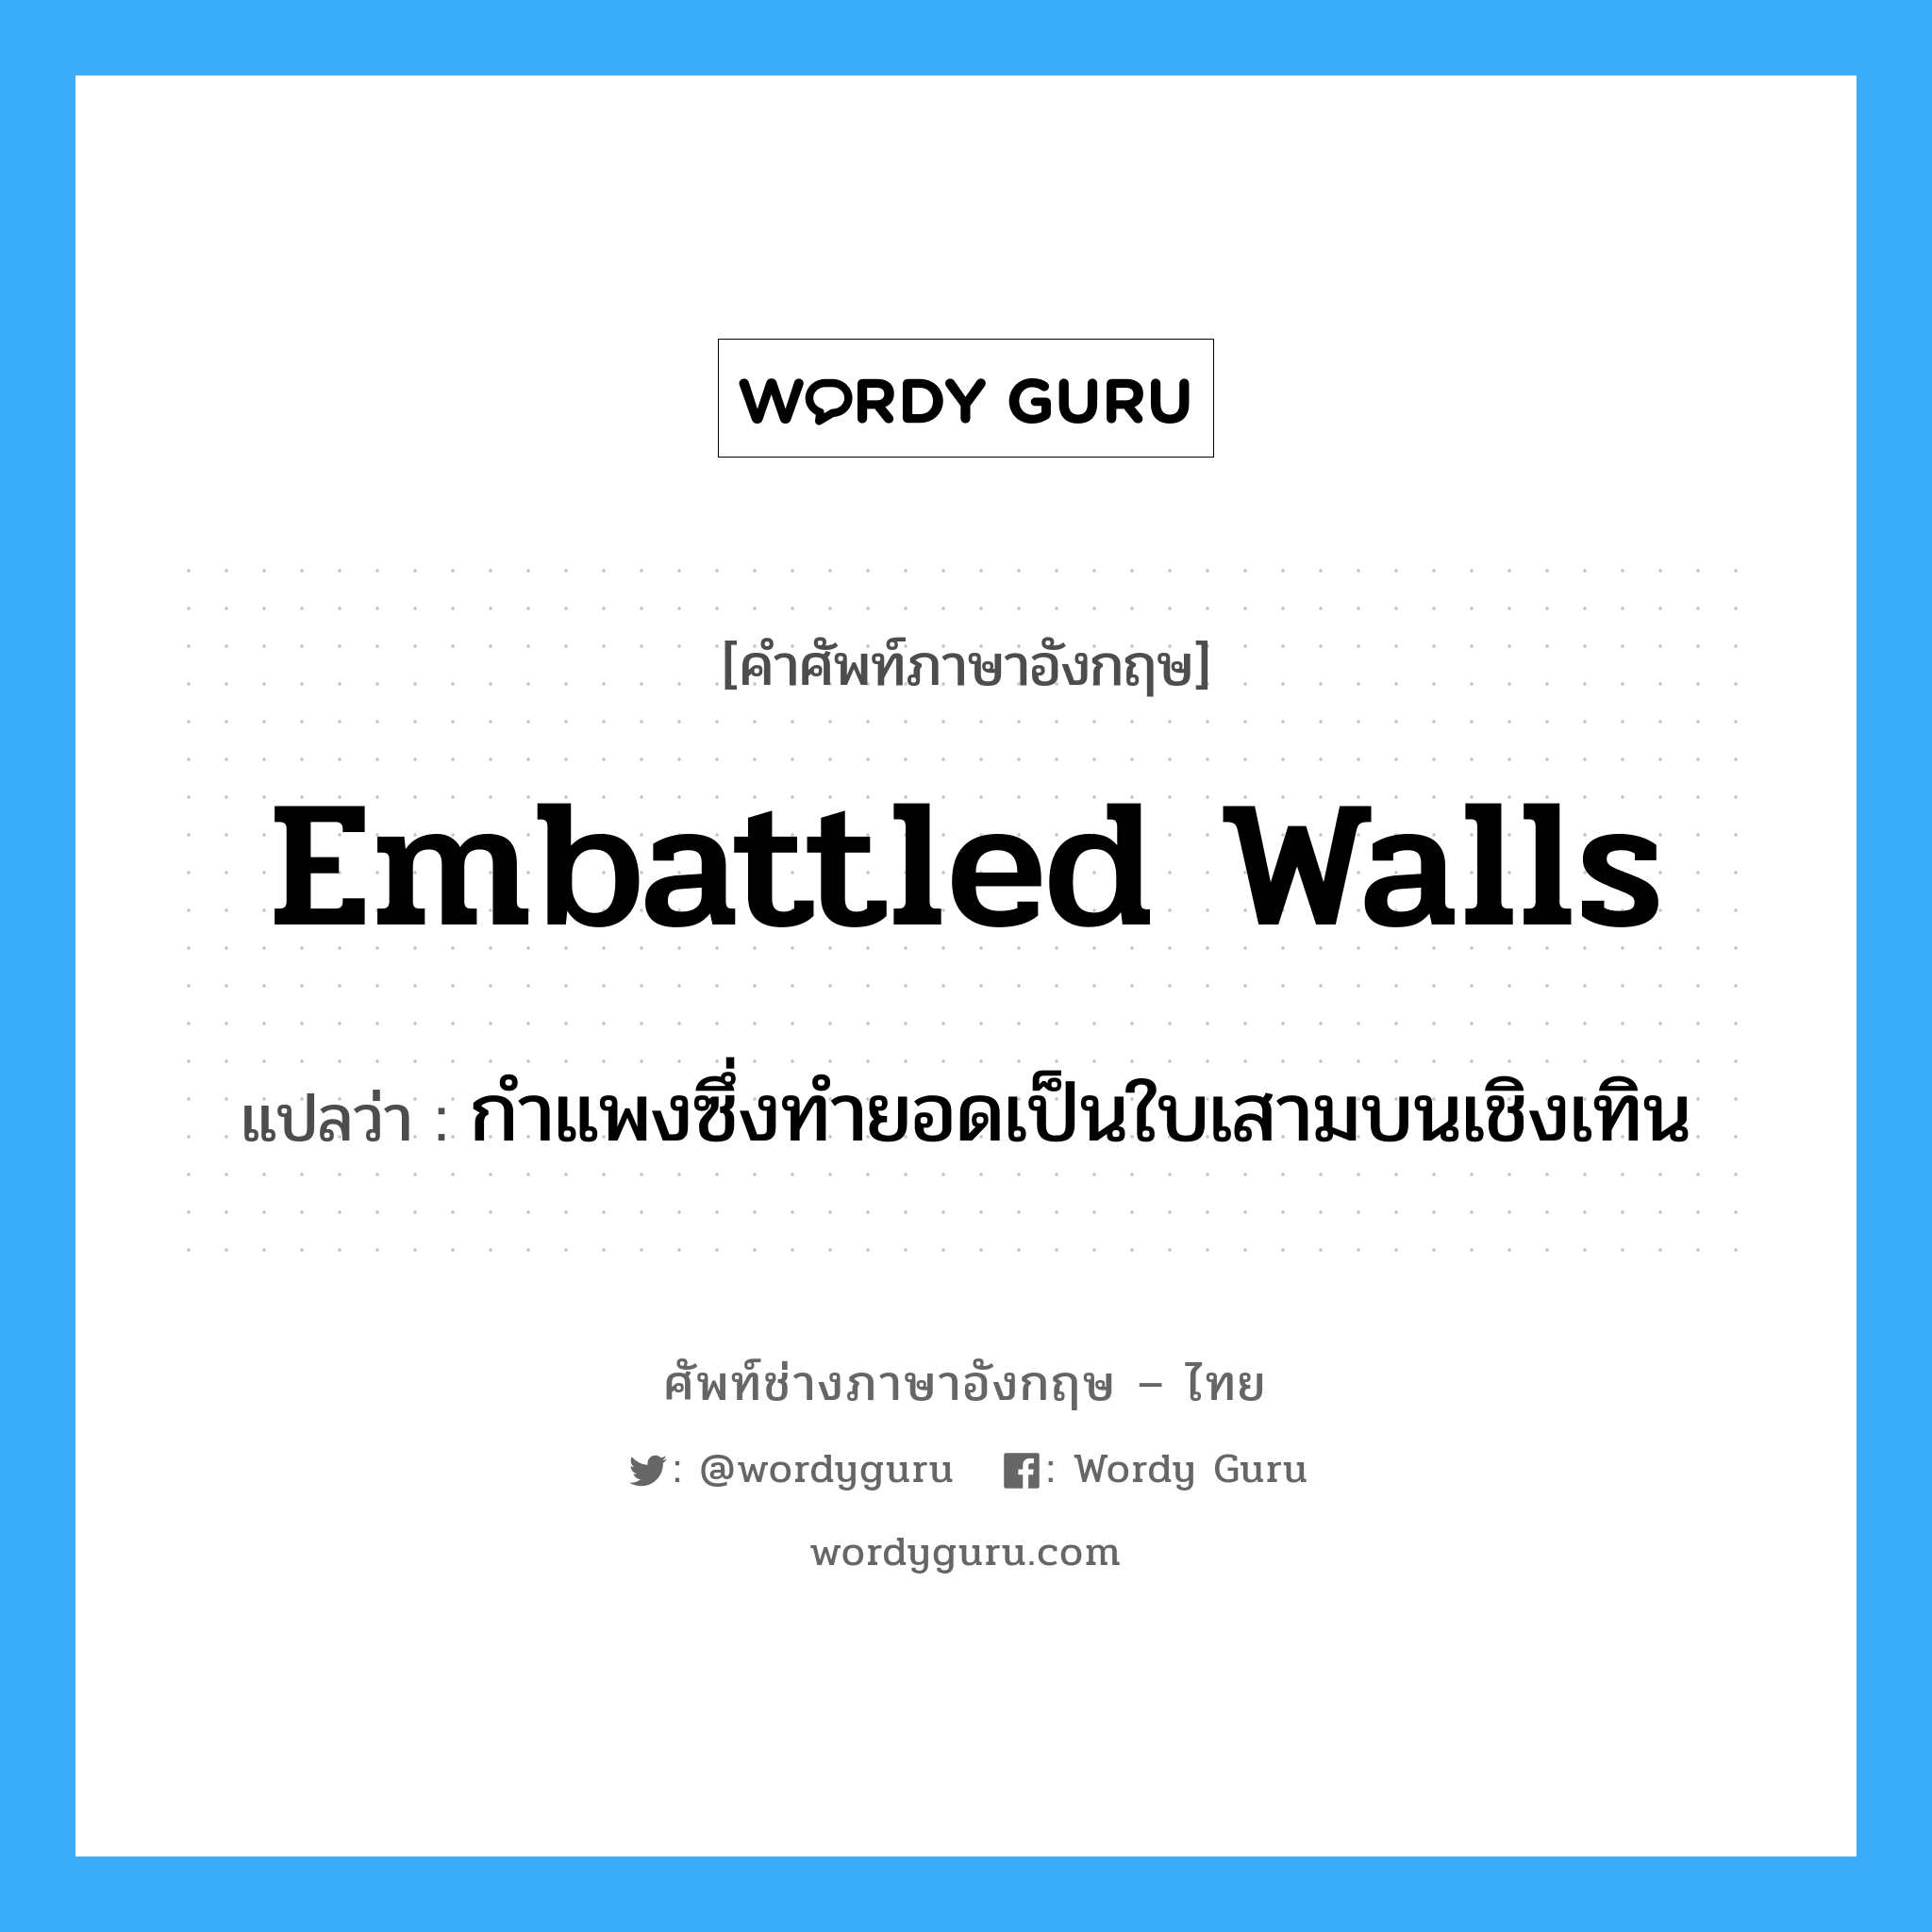 embattled walls แปลว่า?, คำศัพท์ช่างภาษาอังกฤษ - ไทย embattled walls คำศัพท์ภาษาอังกฤษ embattled walls แปลว่า กำแพงซึ่งทำยอดเป็นใบเสามบนเชิงเทิน